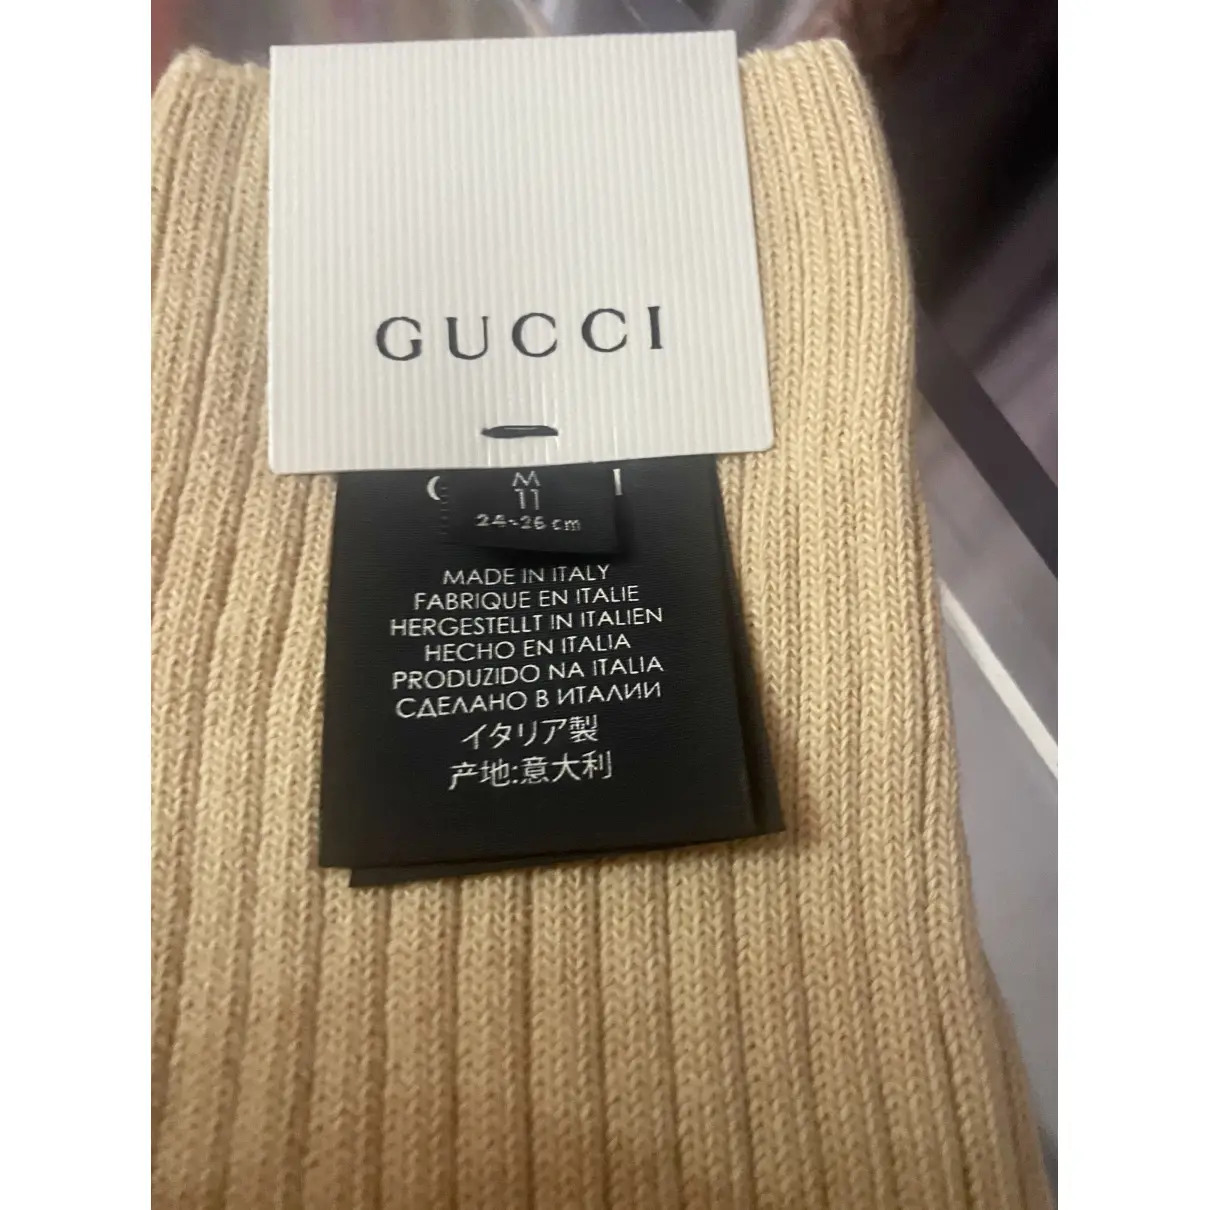 Buy Gucci Beige Cotton Lingerie online